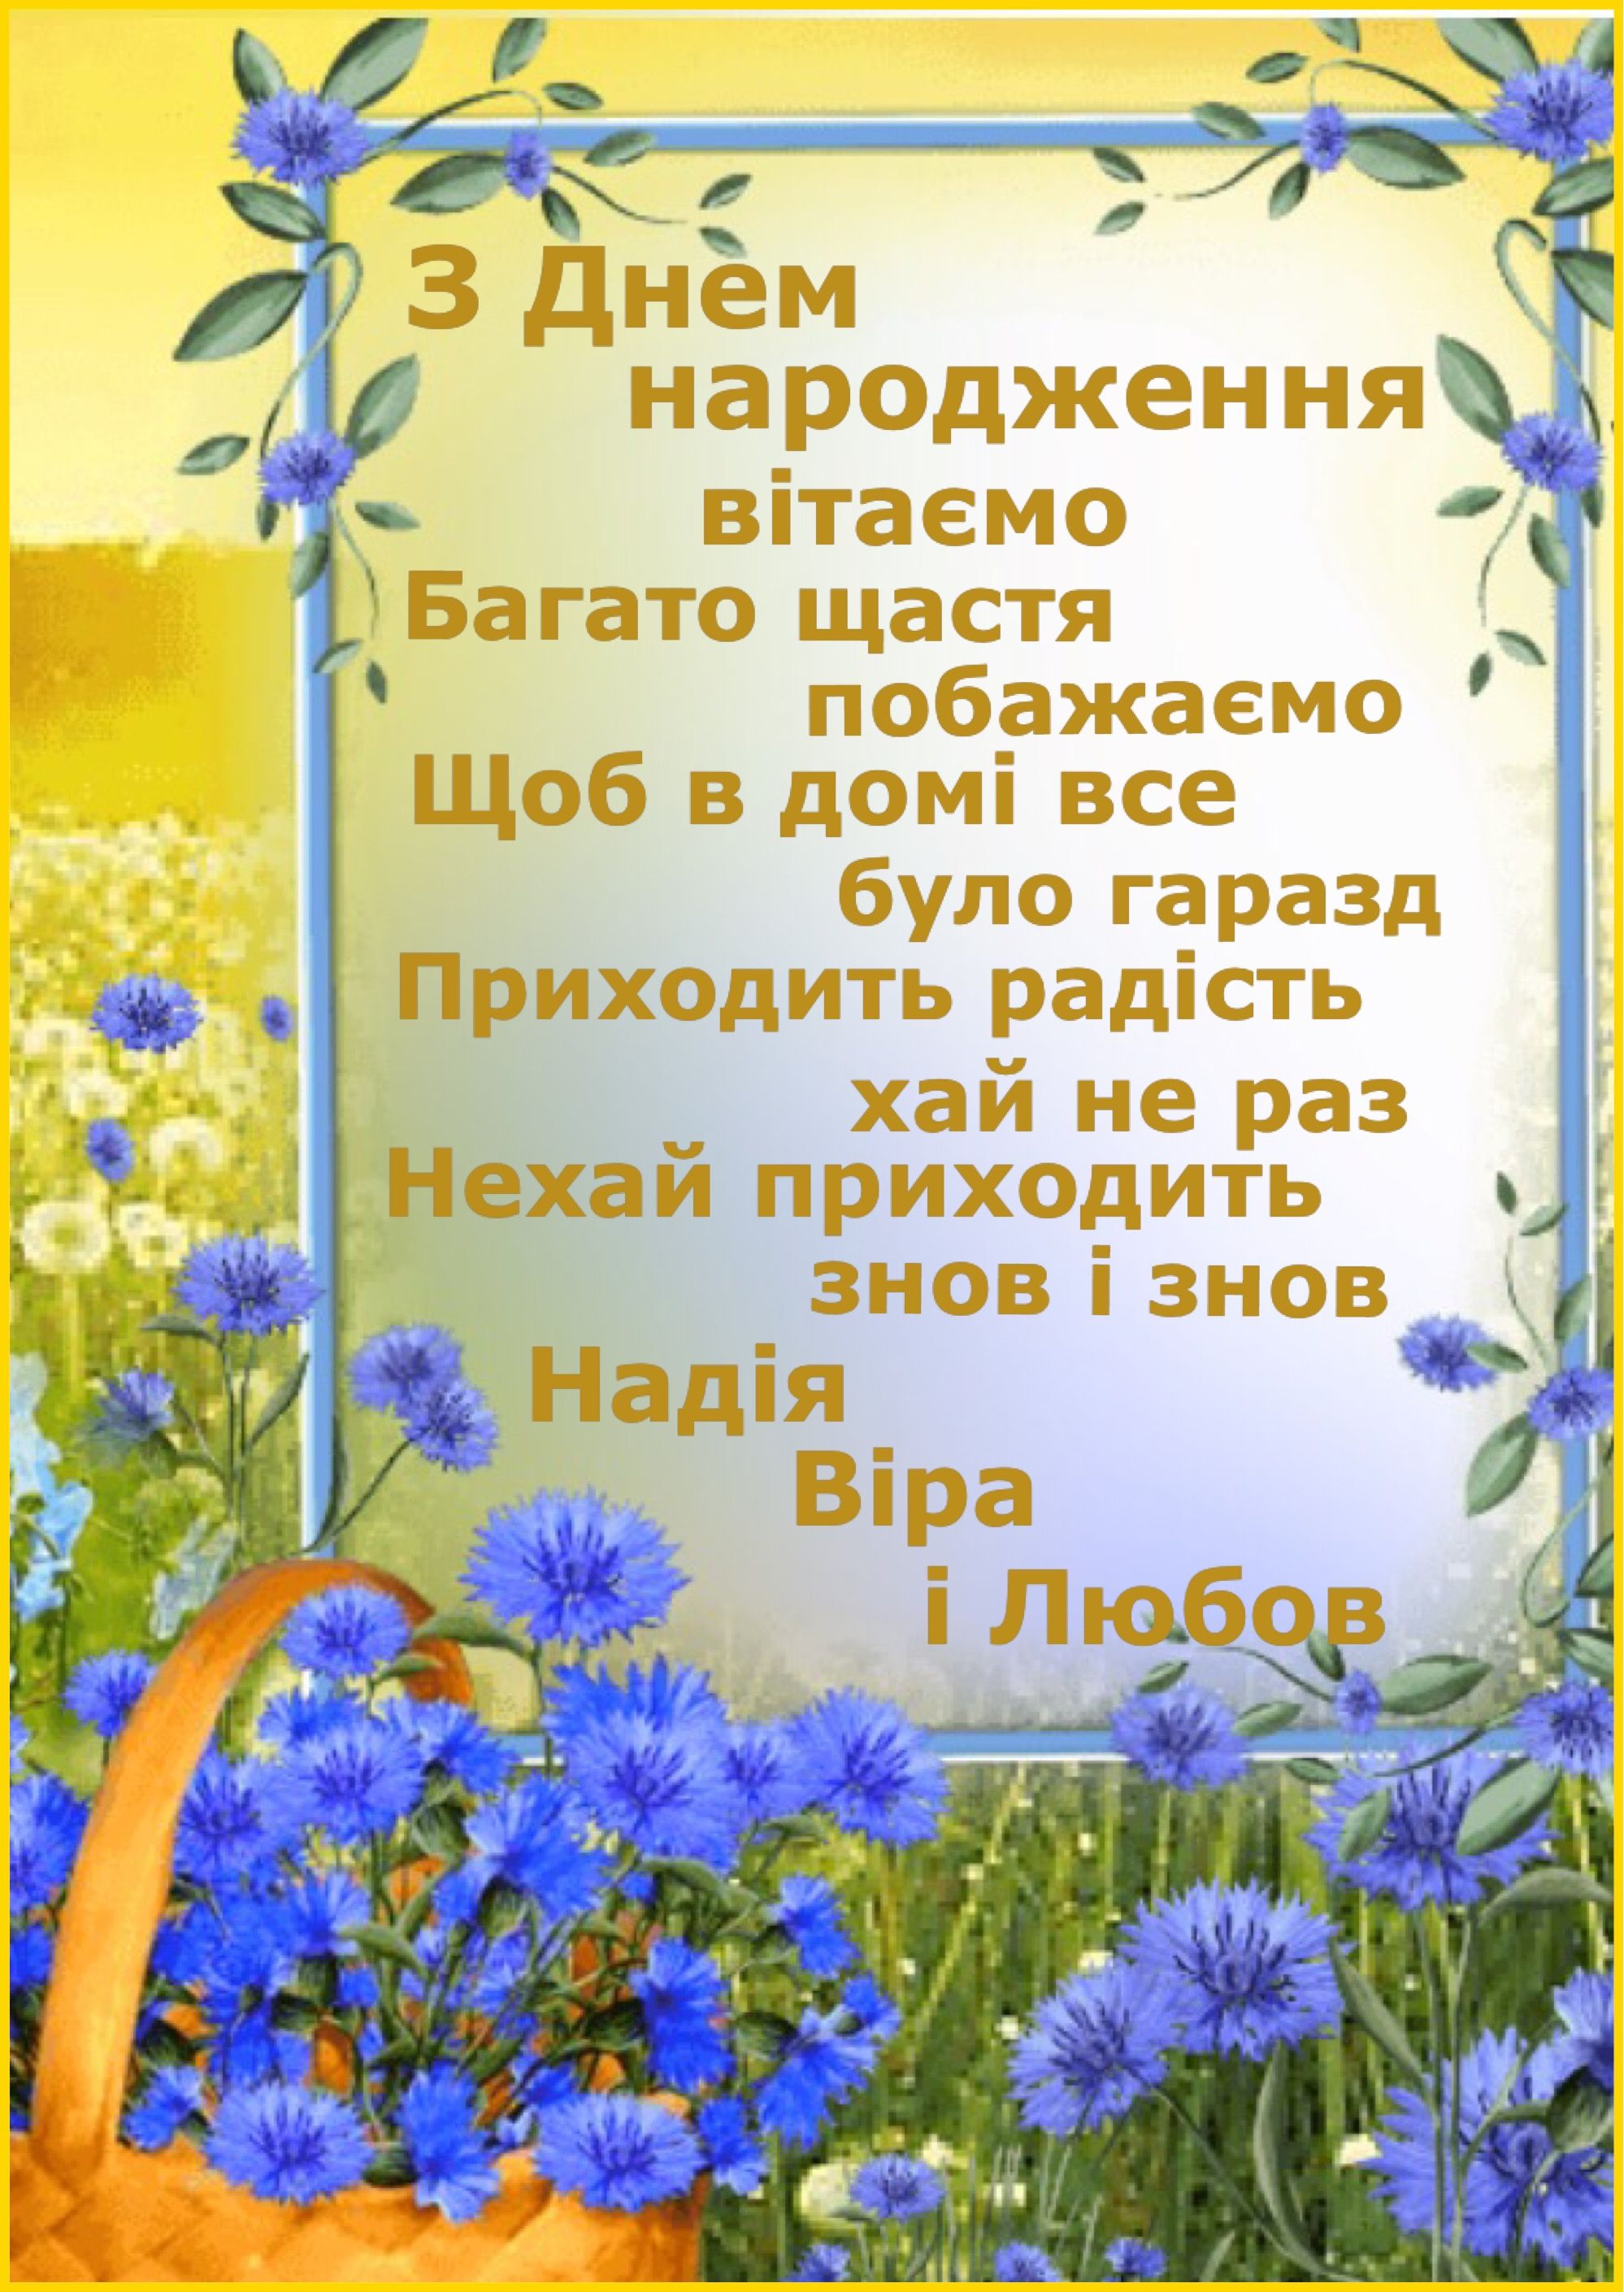 Привітання з днем народження коханій дівчині, жінці українською мовою
